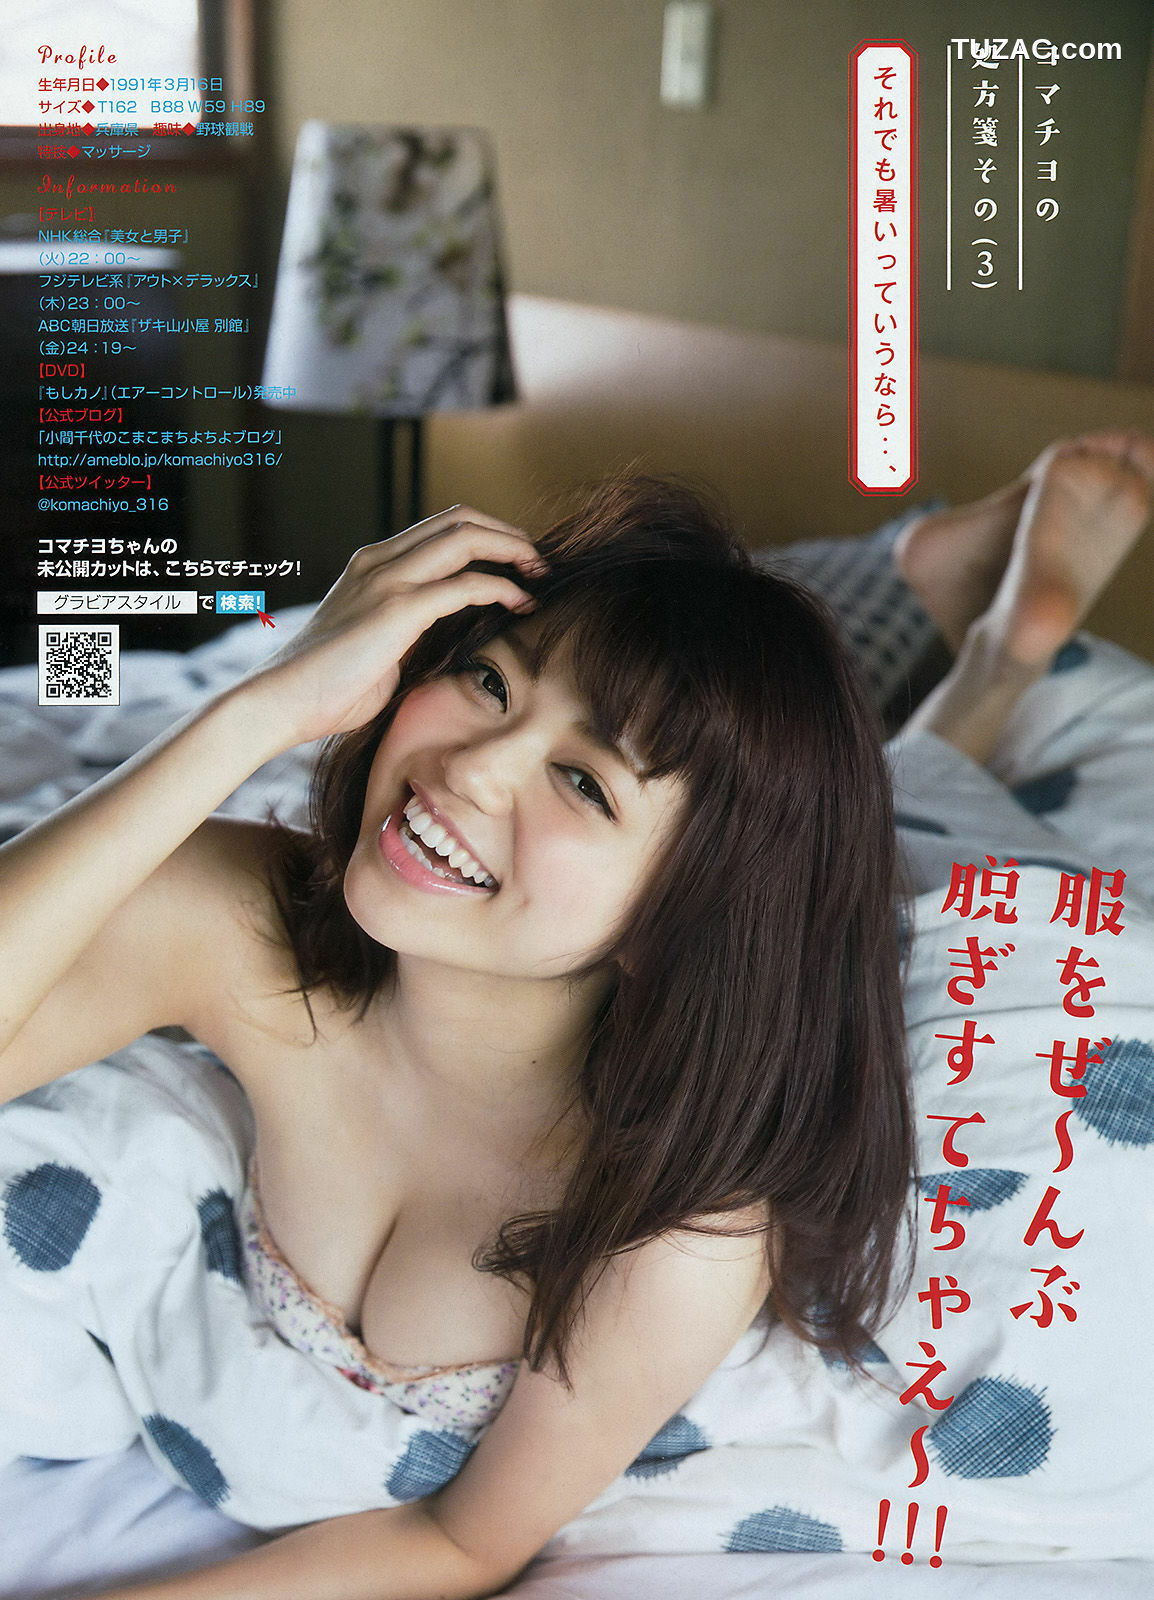 Young Magazine杂志写真_ 前田敦子 小間千代 2015年No.34 写真杂志[12P]